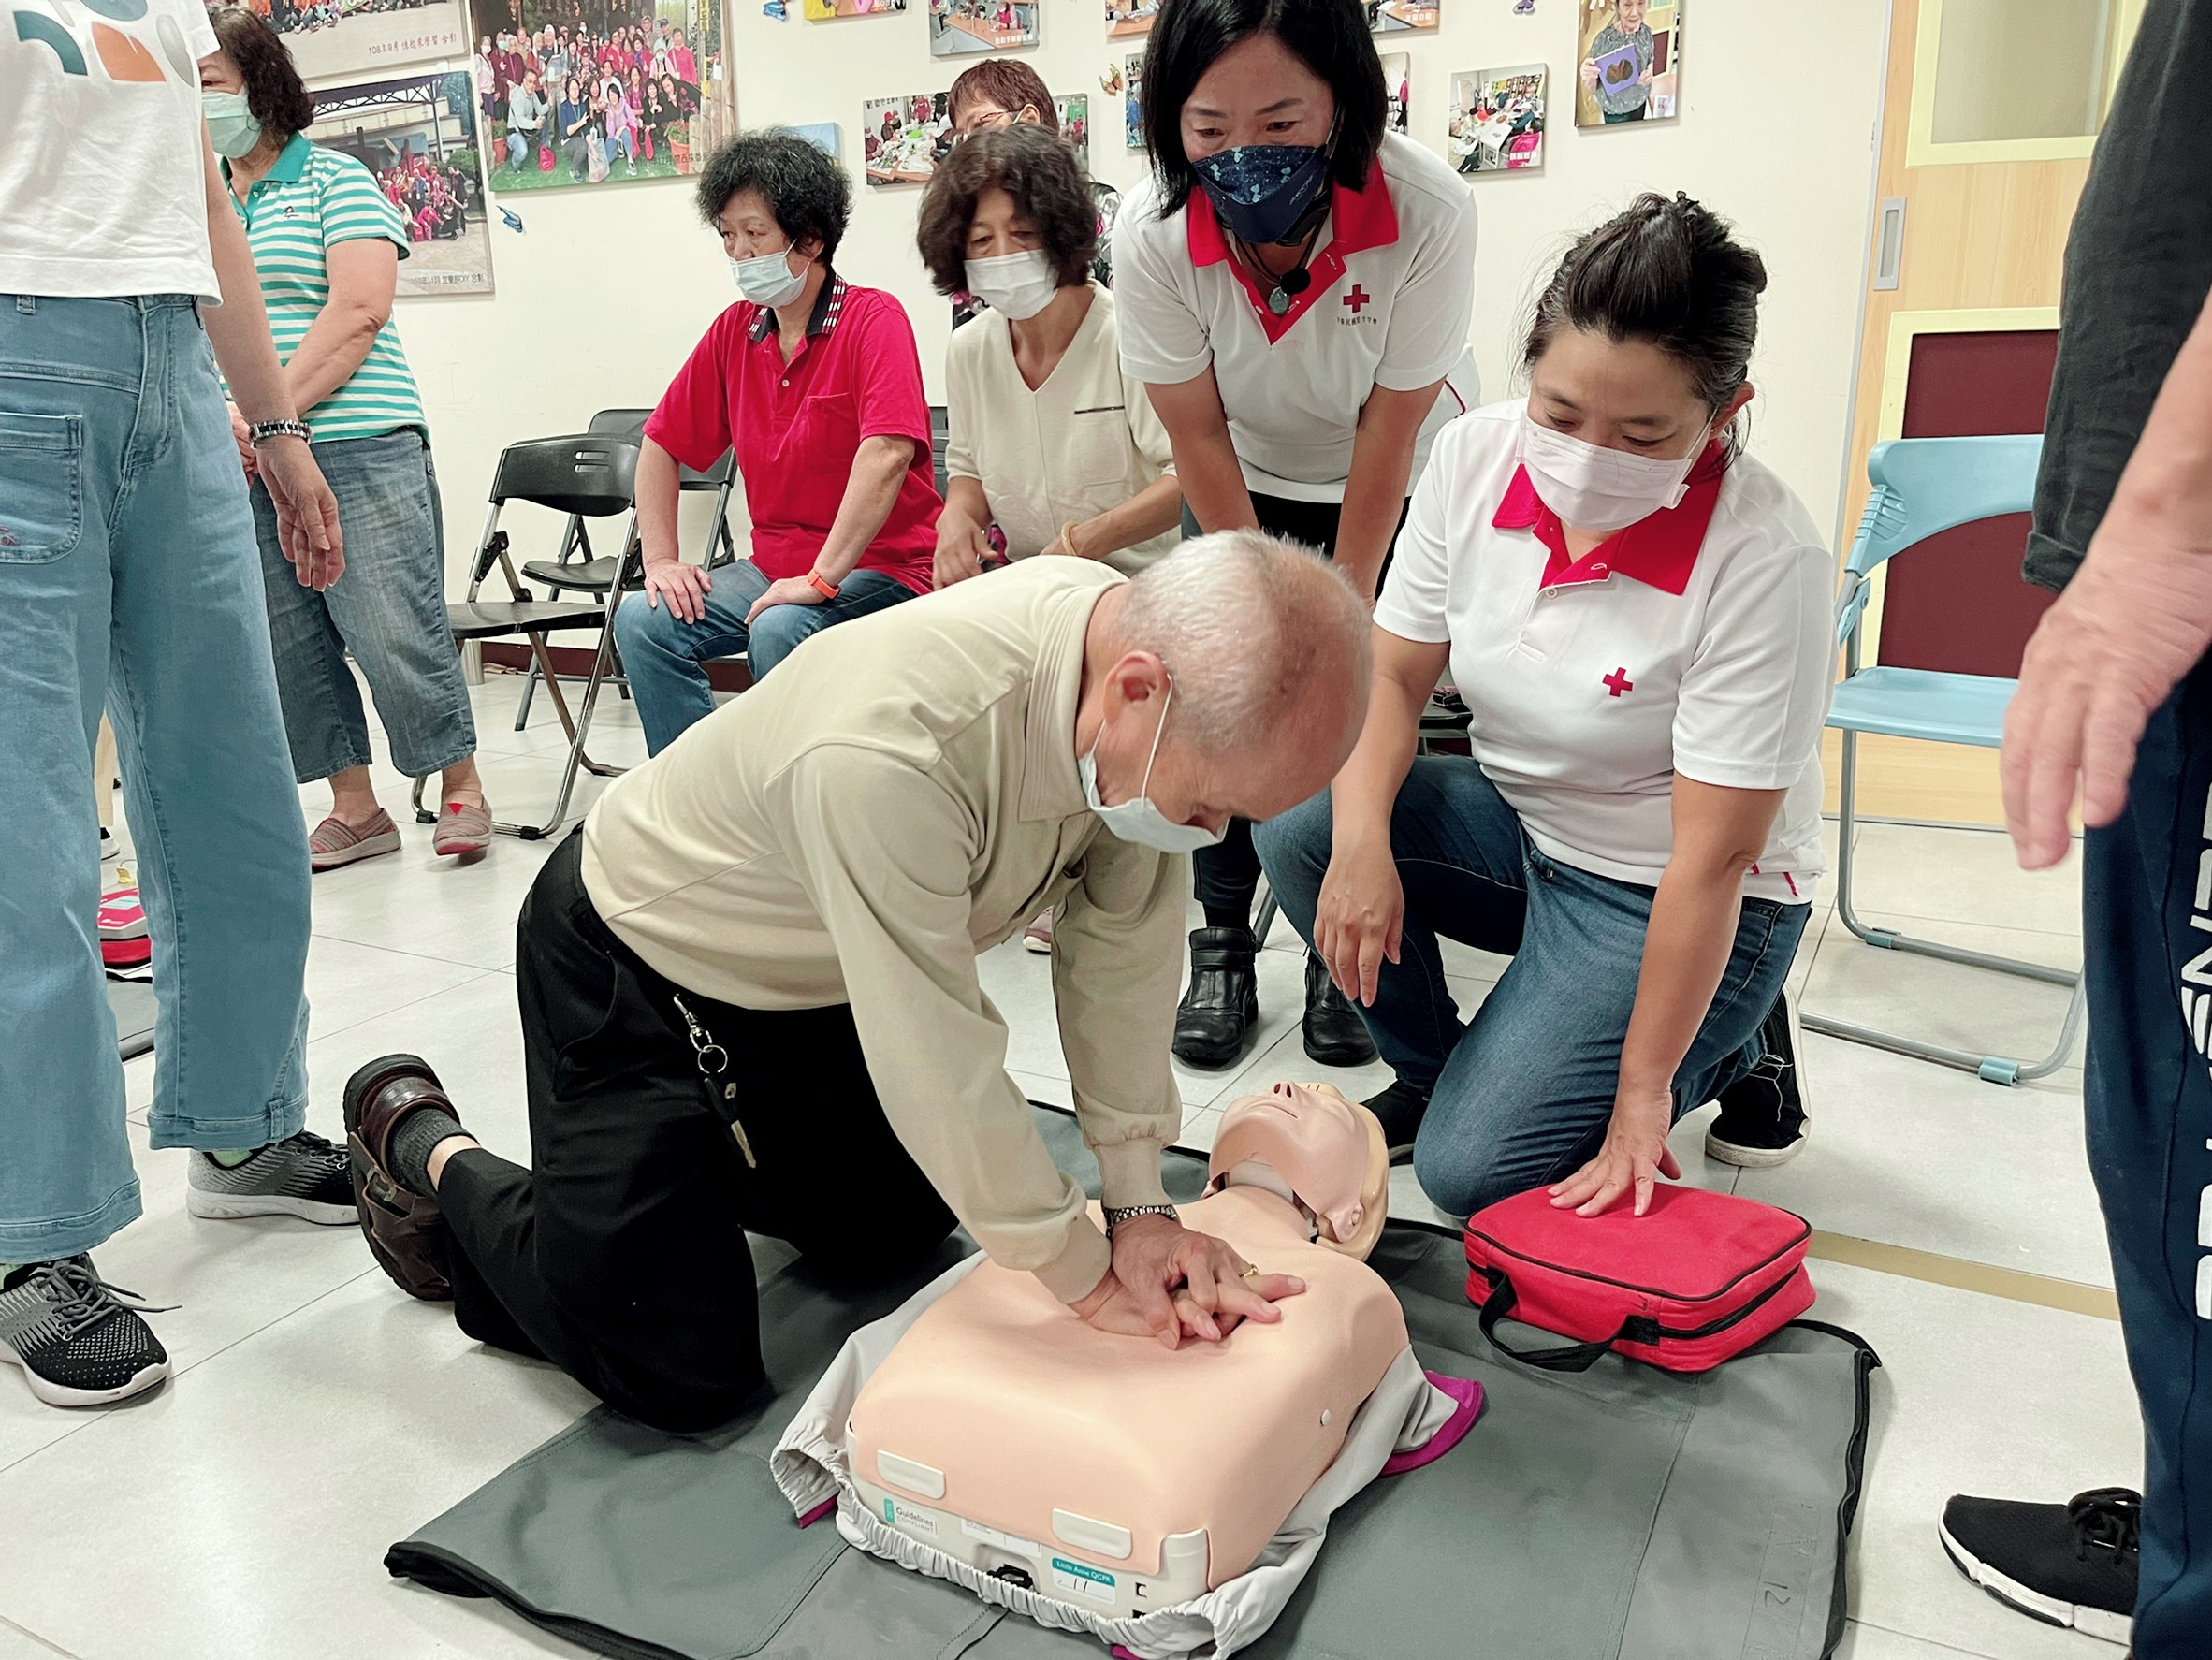 阿公阿嬤學CPR，以安妮模型練習按壓，模擬急救情境熟悉急救流程(於新北市八里療養院中和院區)